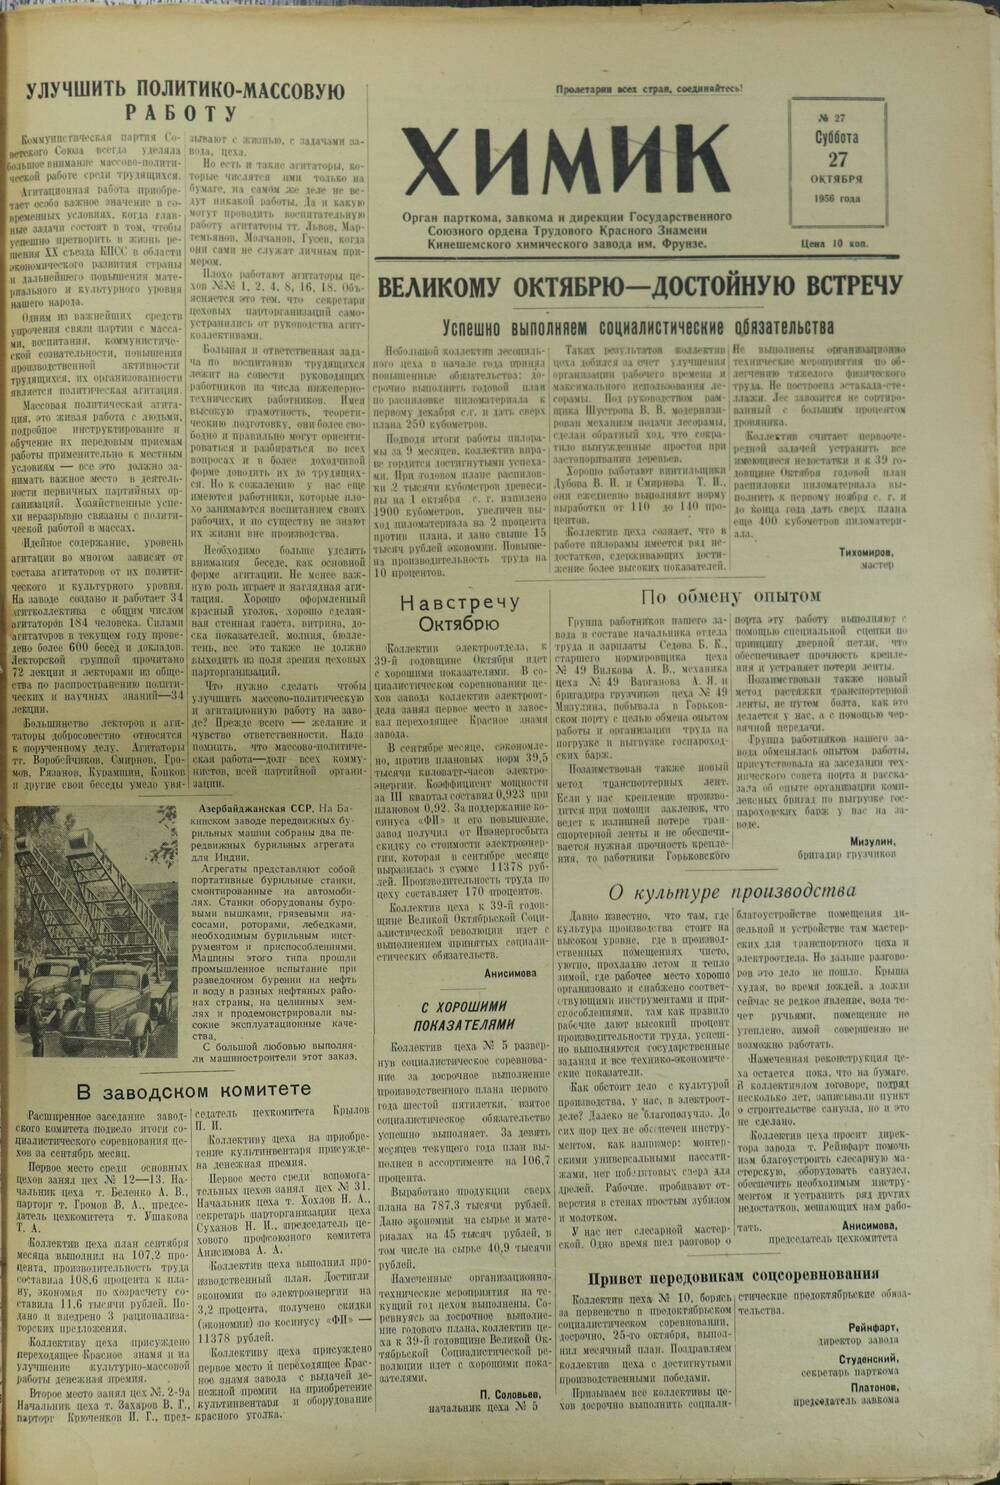 Газета «Химик» № 27 от 27 октября 1956 года.